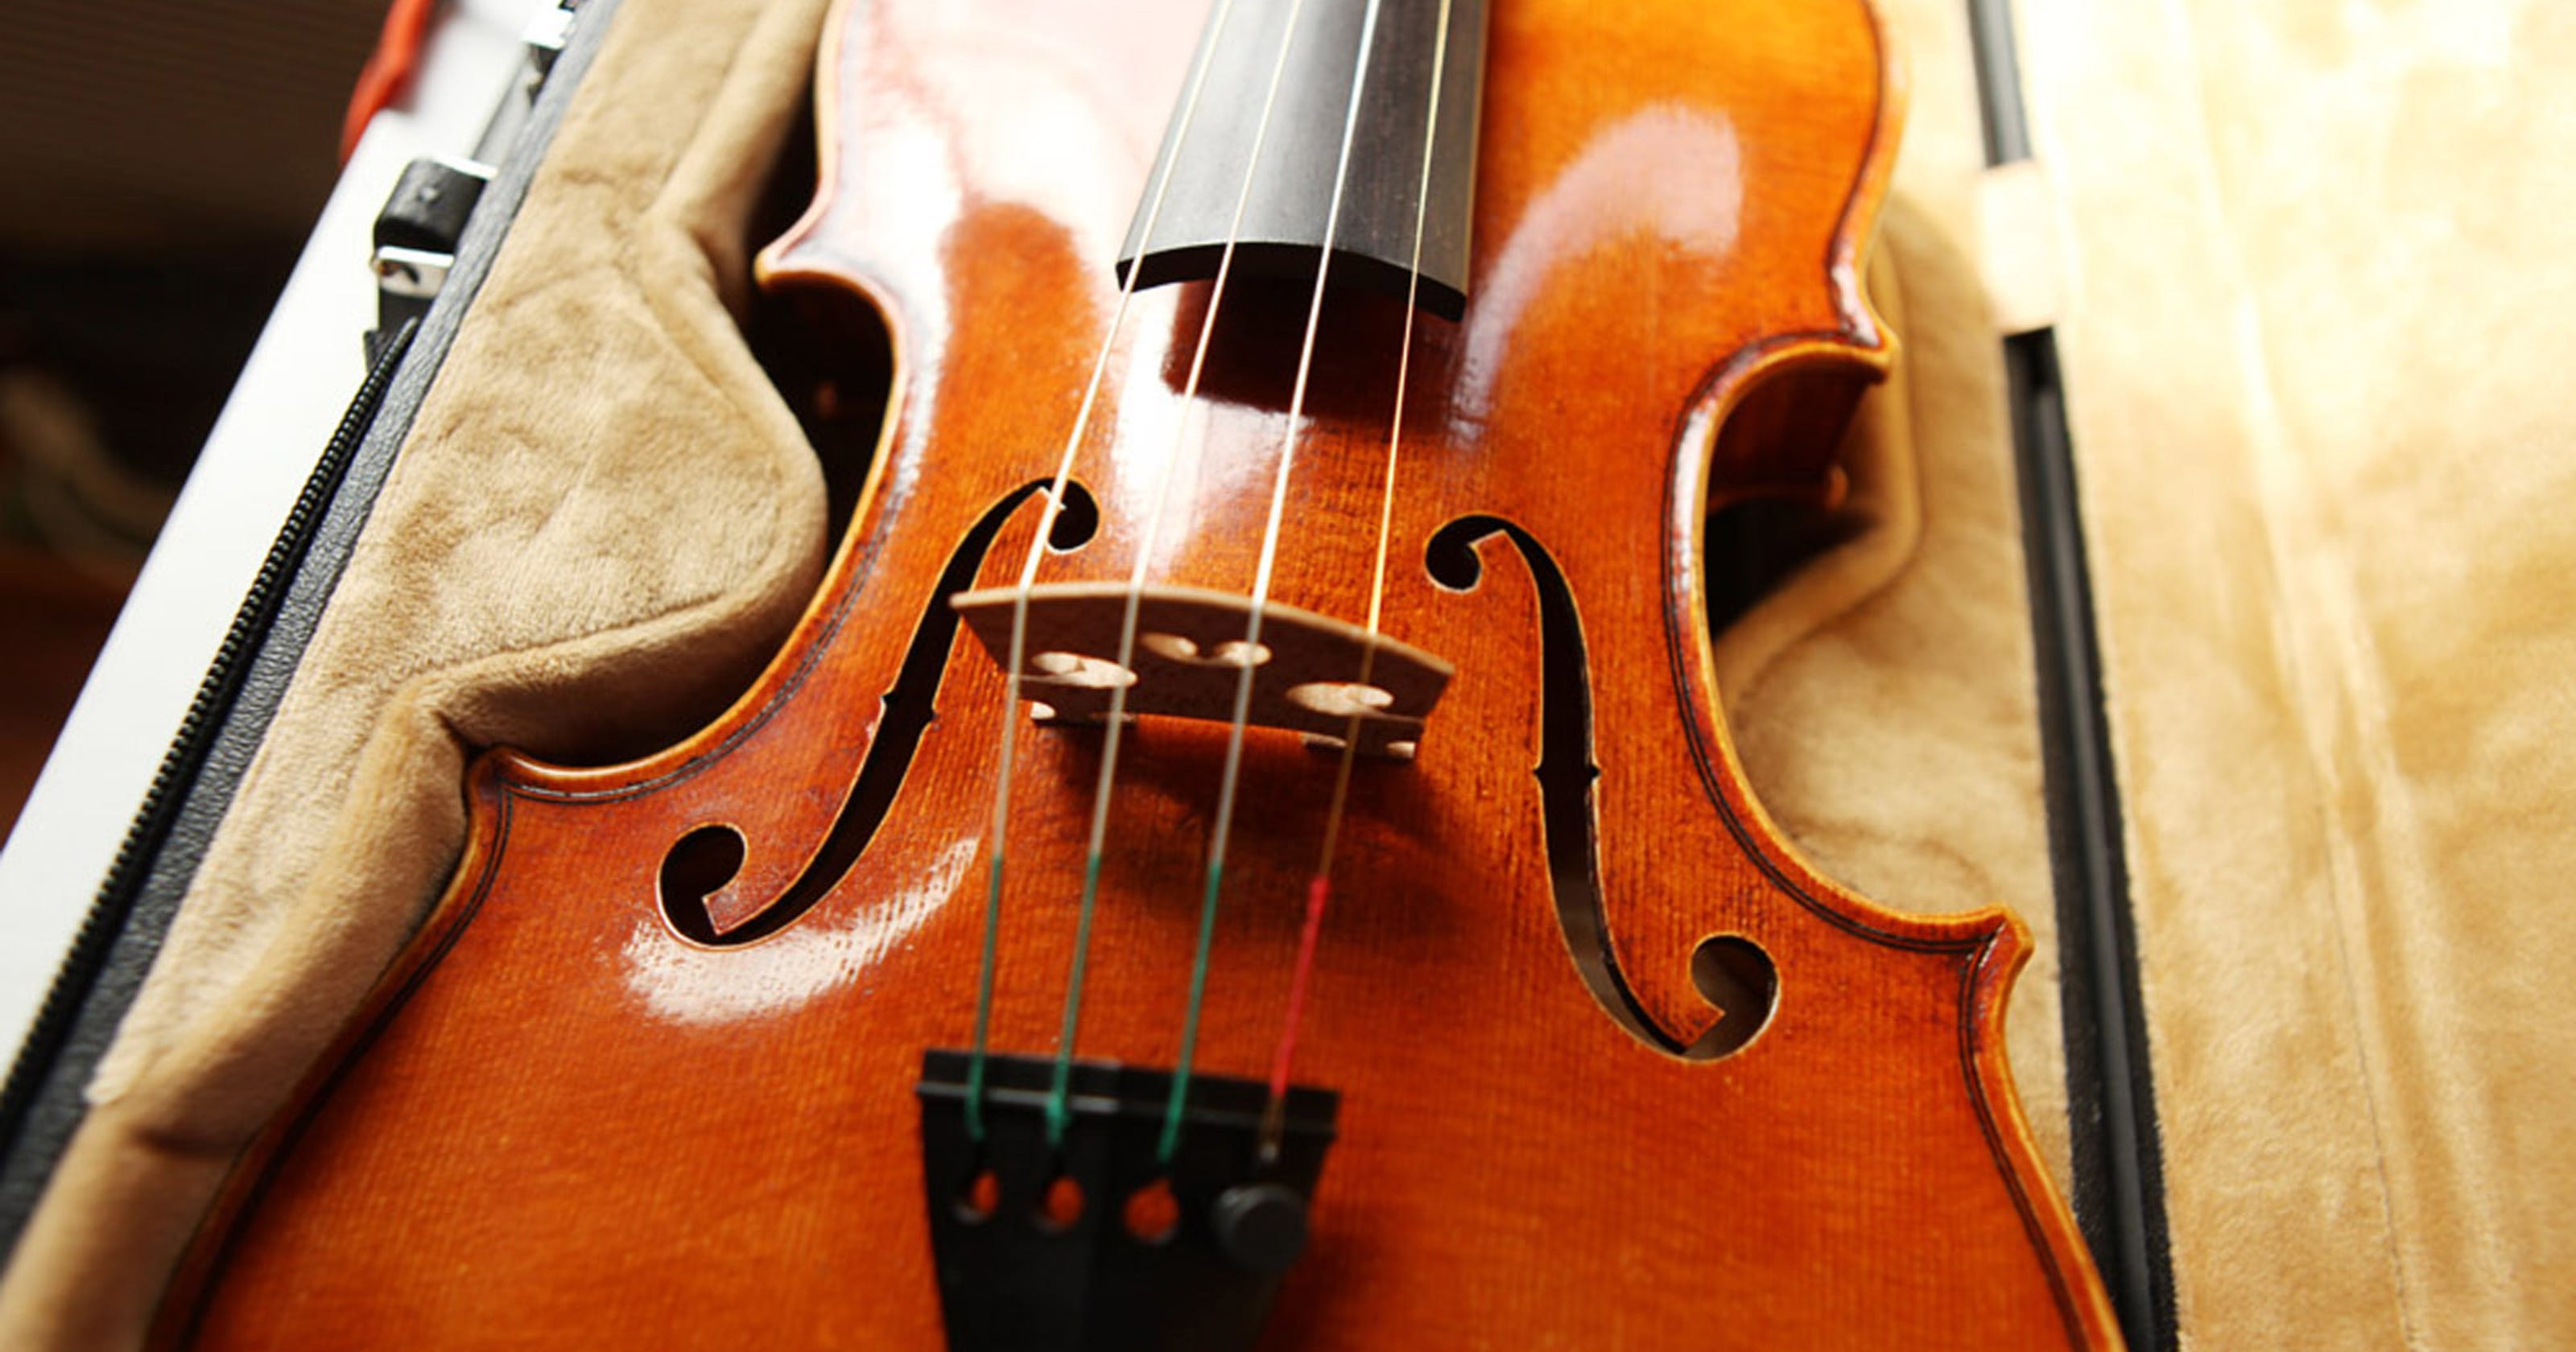 Violin maker Damon Gray wins silver for sound in prestigious contest